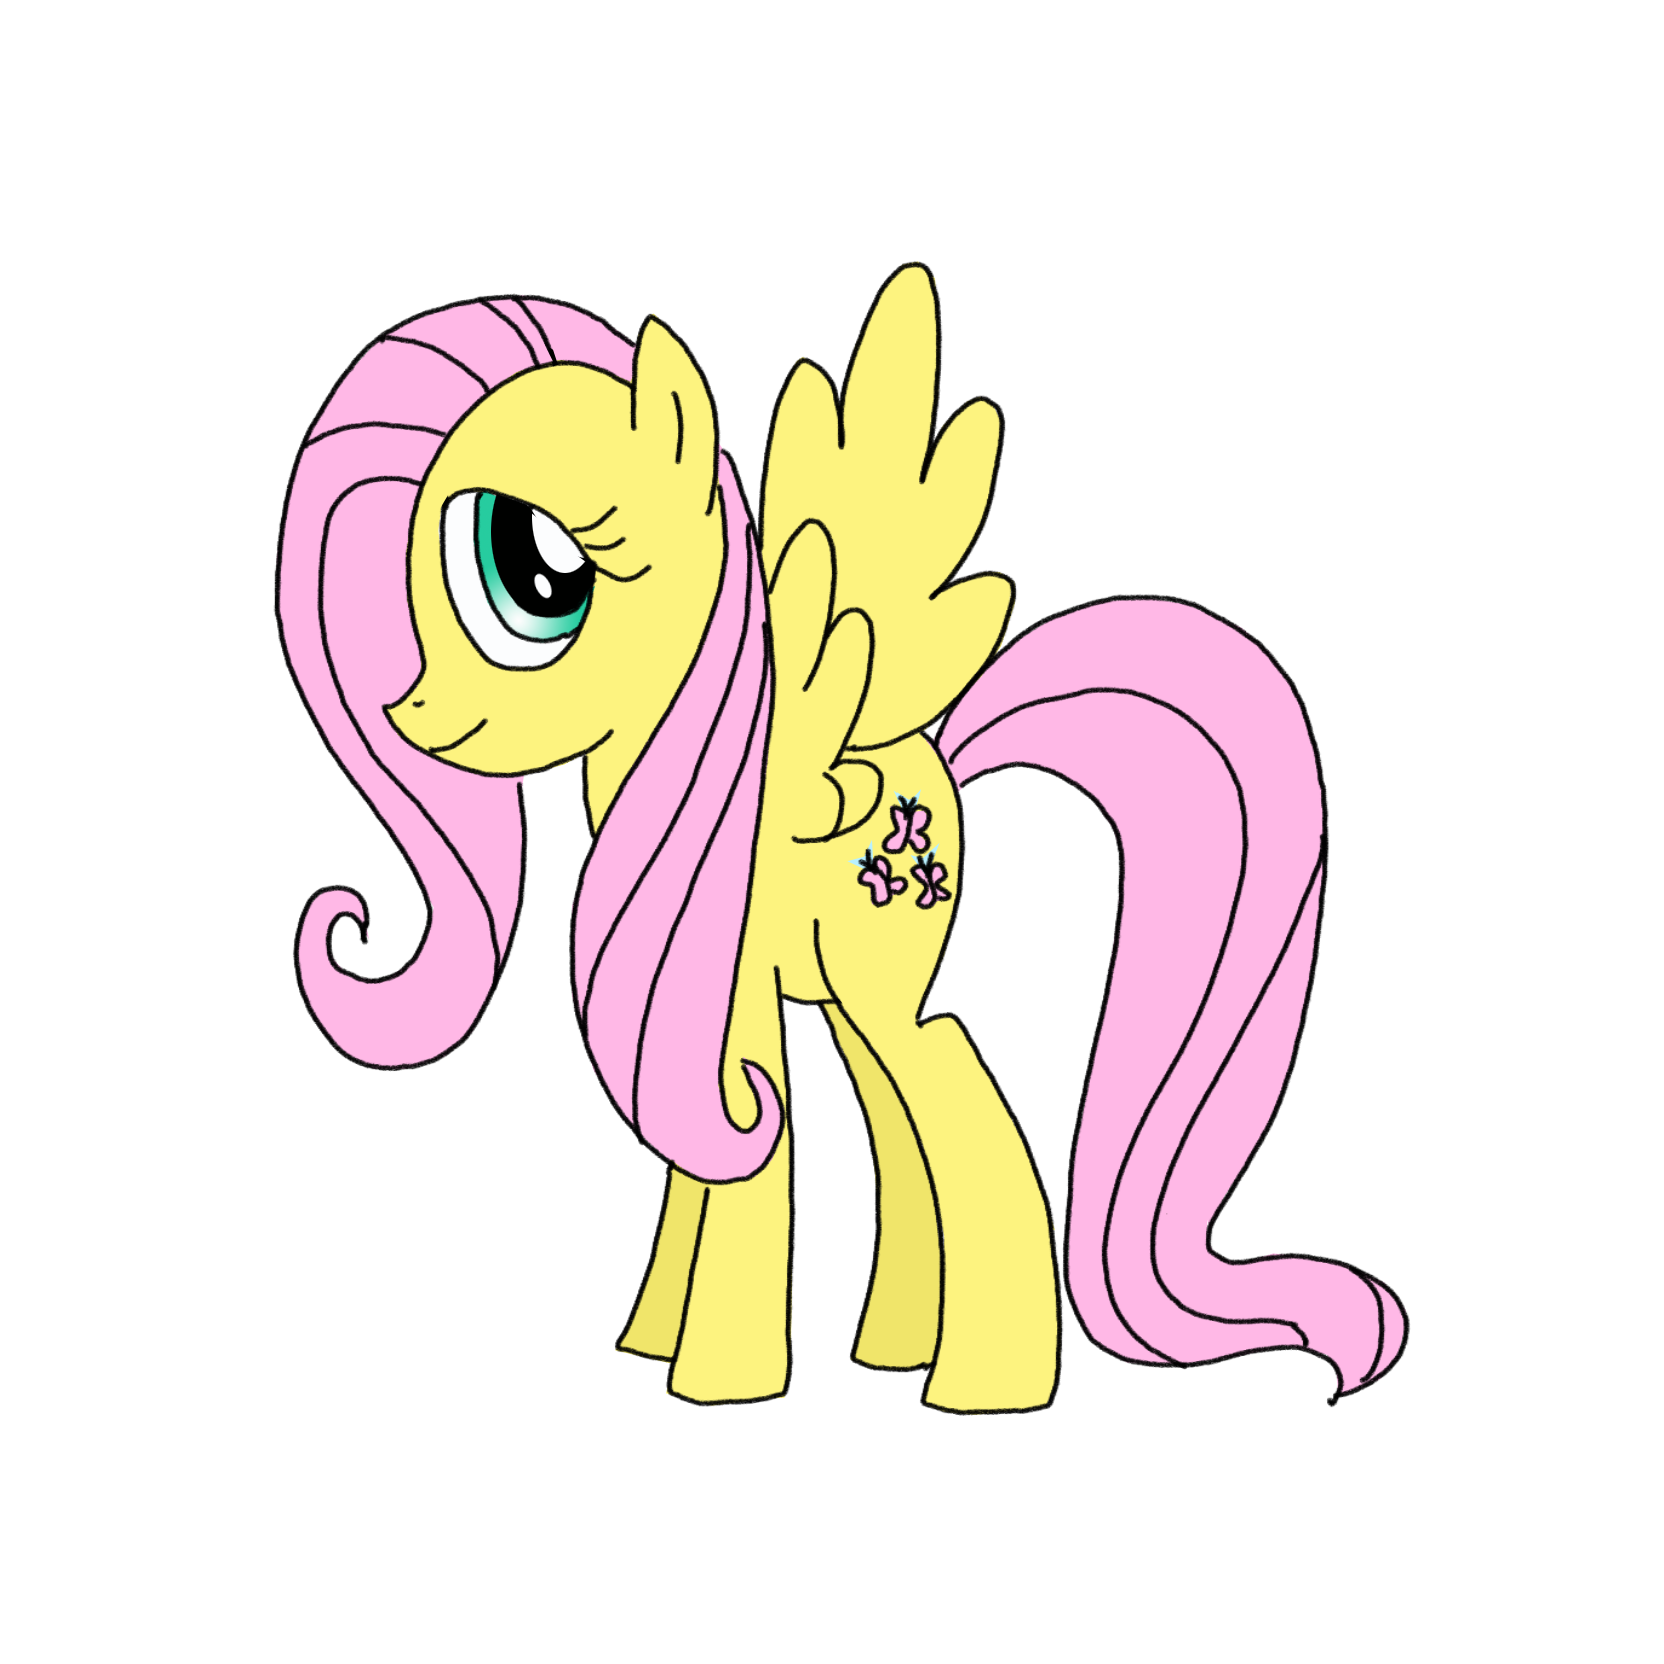 How to Draw Pinkie Pie (My Little Pony)